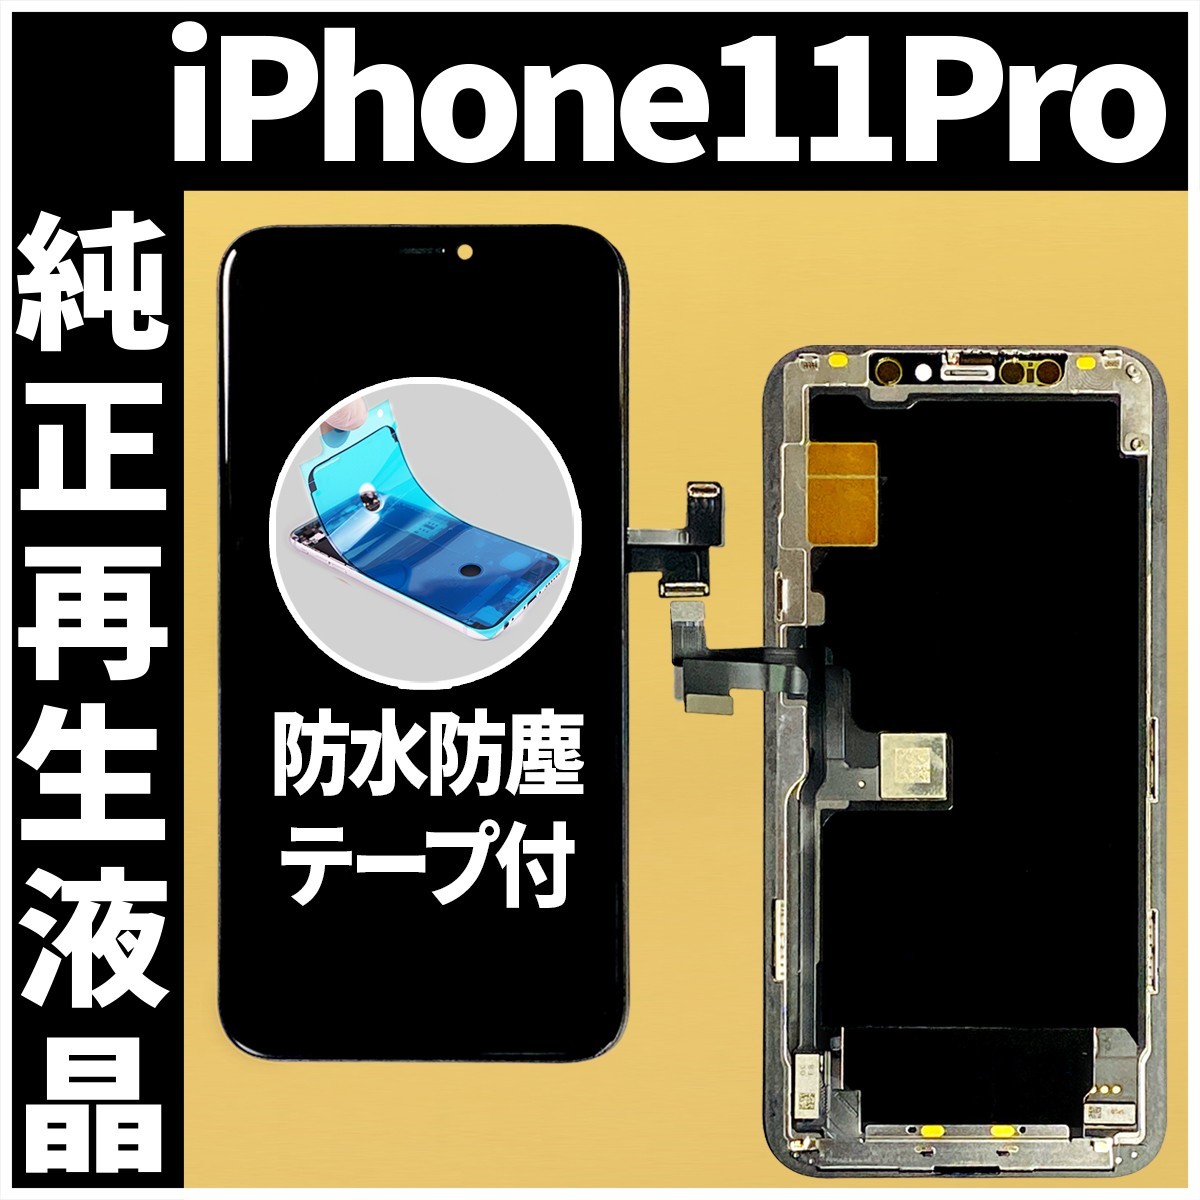 フロントパネル iPhone11Pro 純正再生品 防水テープ 純正液晶 工具無